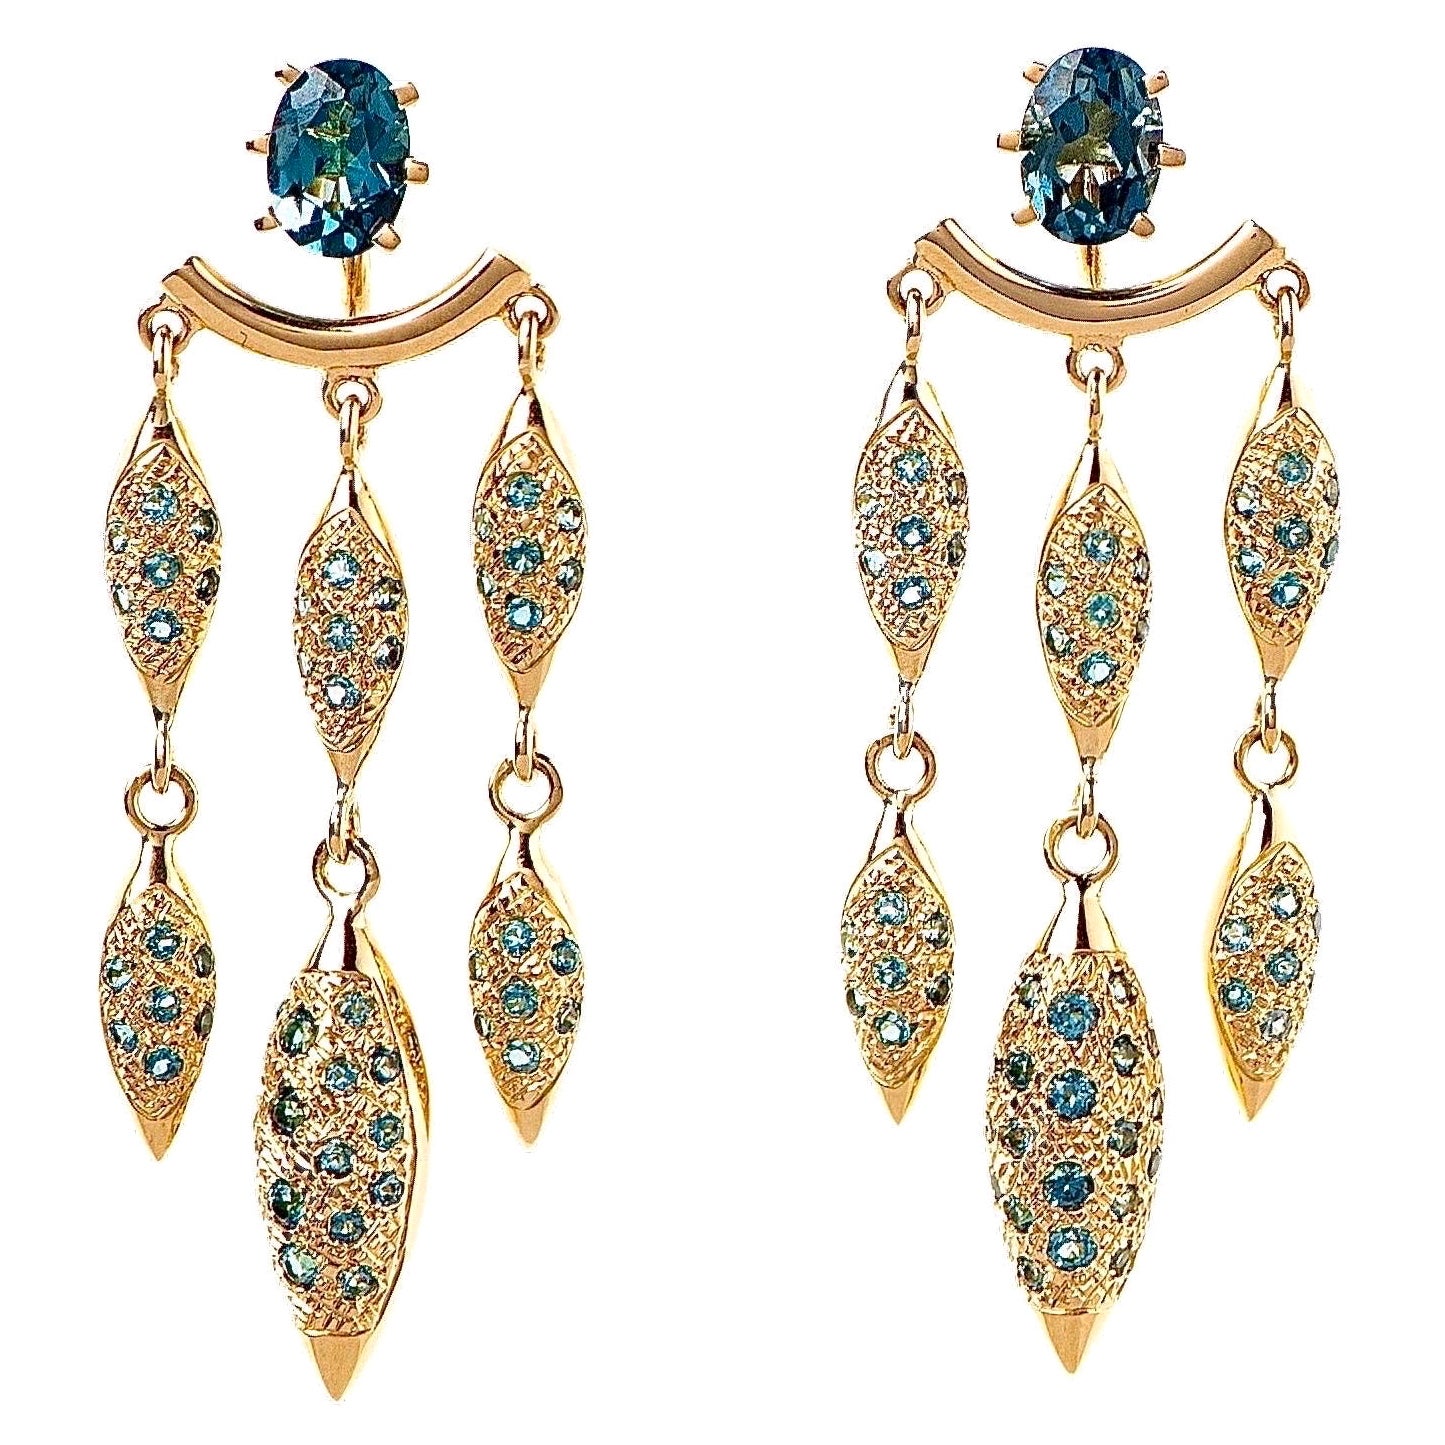 Maria Kotsoni, longues vestes d'oreilles chandelier contemporaines en or 18 carats et topaze bleue